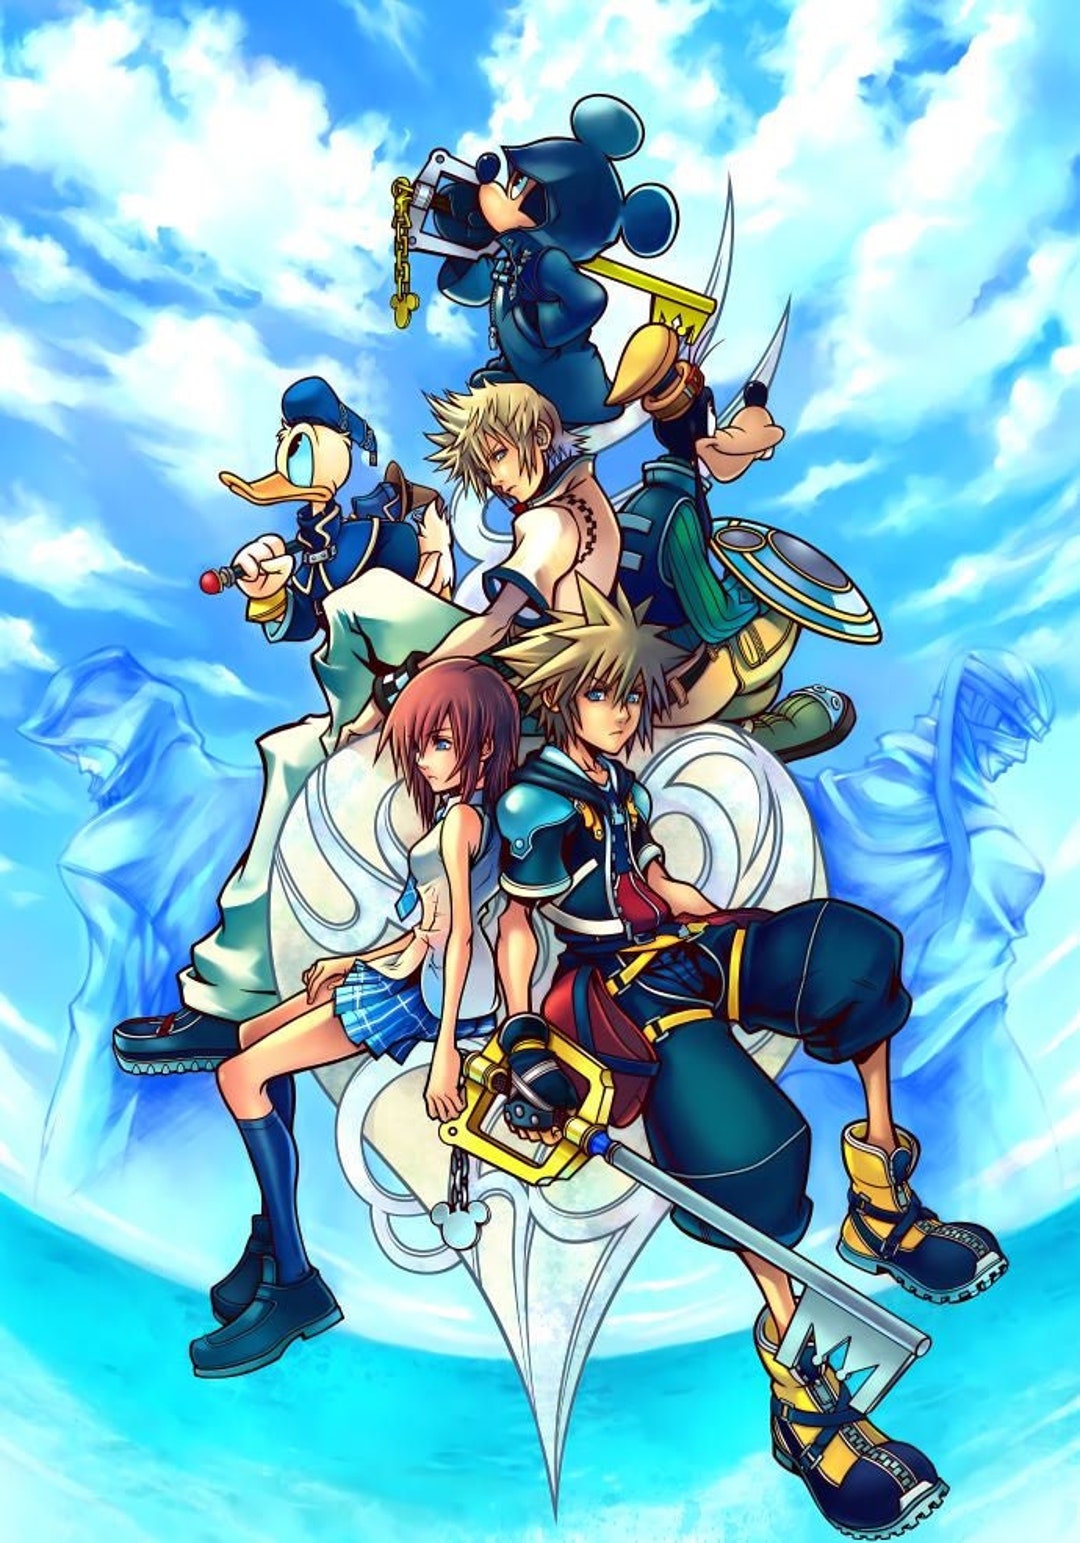 Kingdom Hearts 2 PlayStation 2 Box Art Cover by nakashimariku